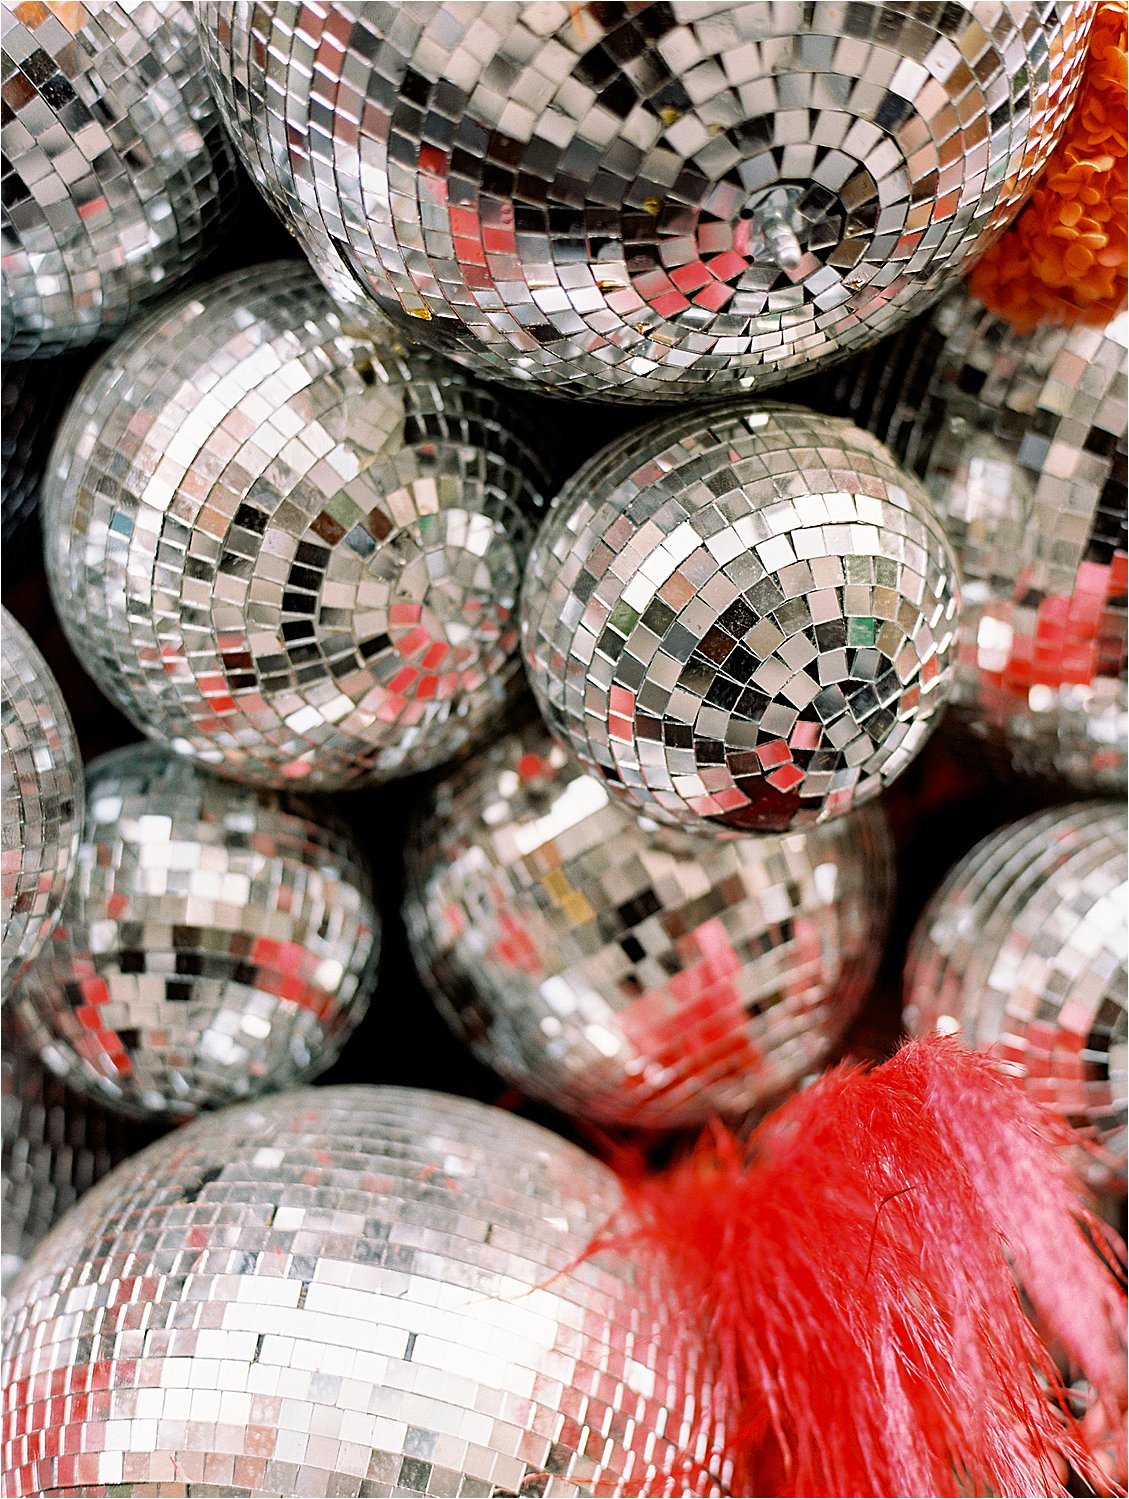 Disco balls for Pride in SoHo